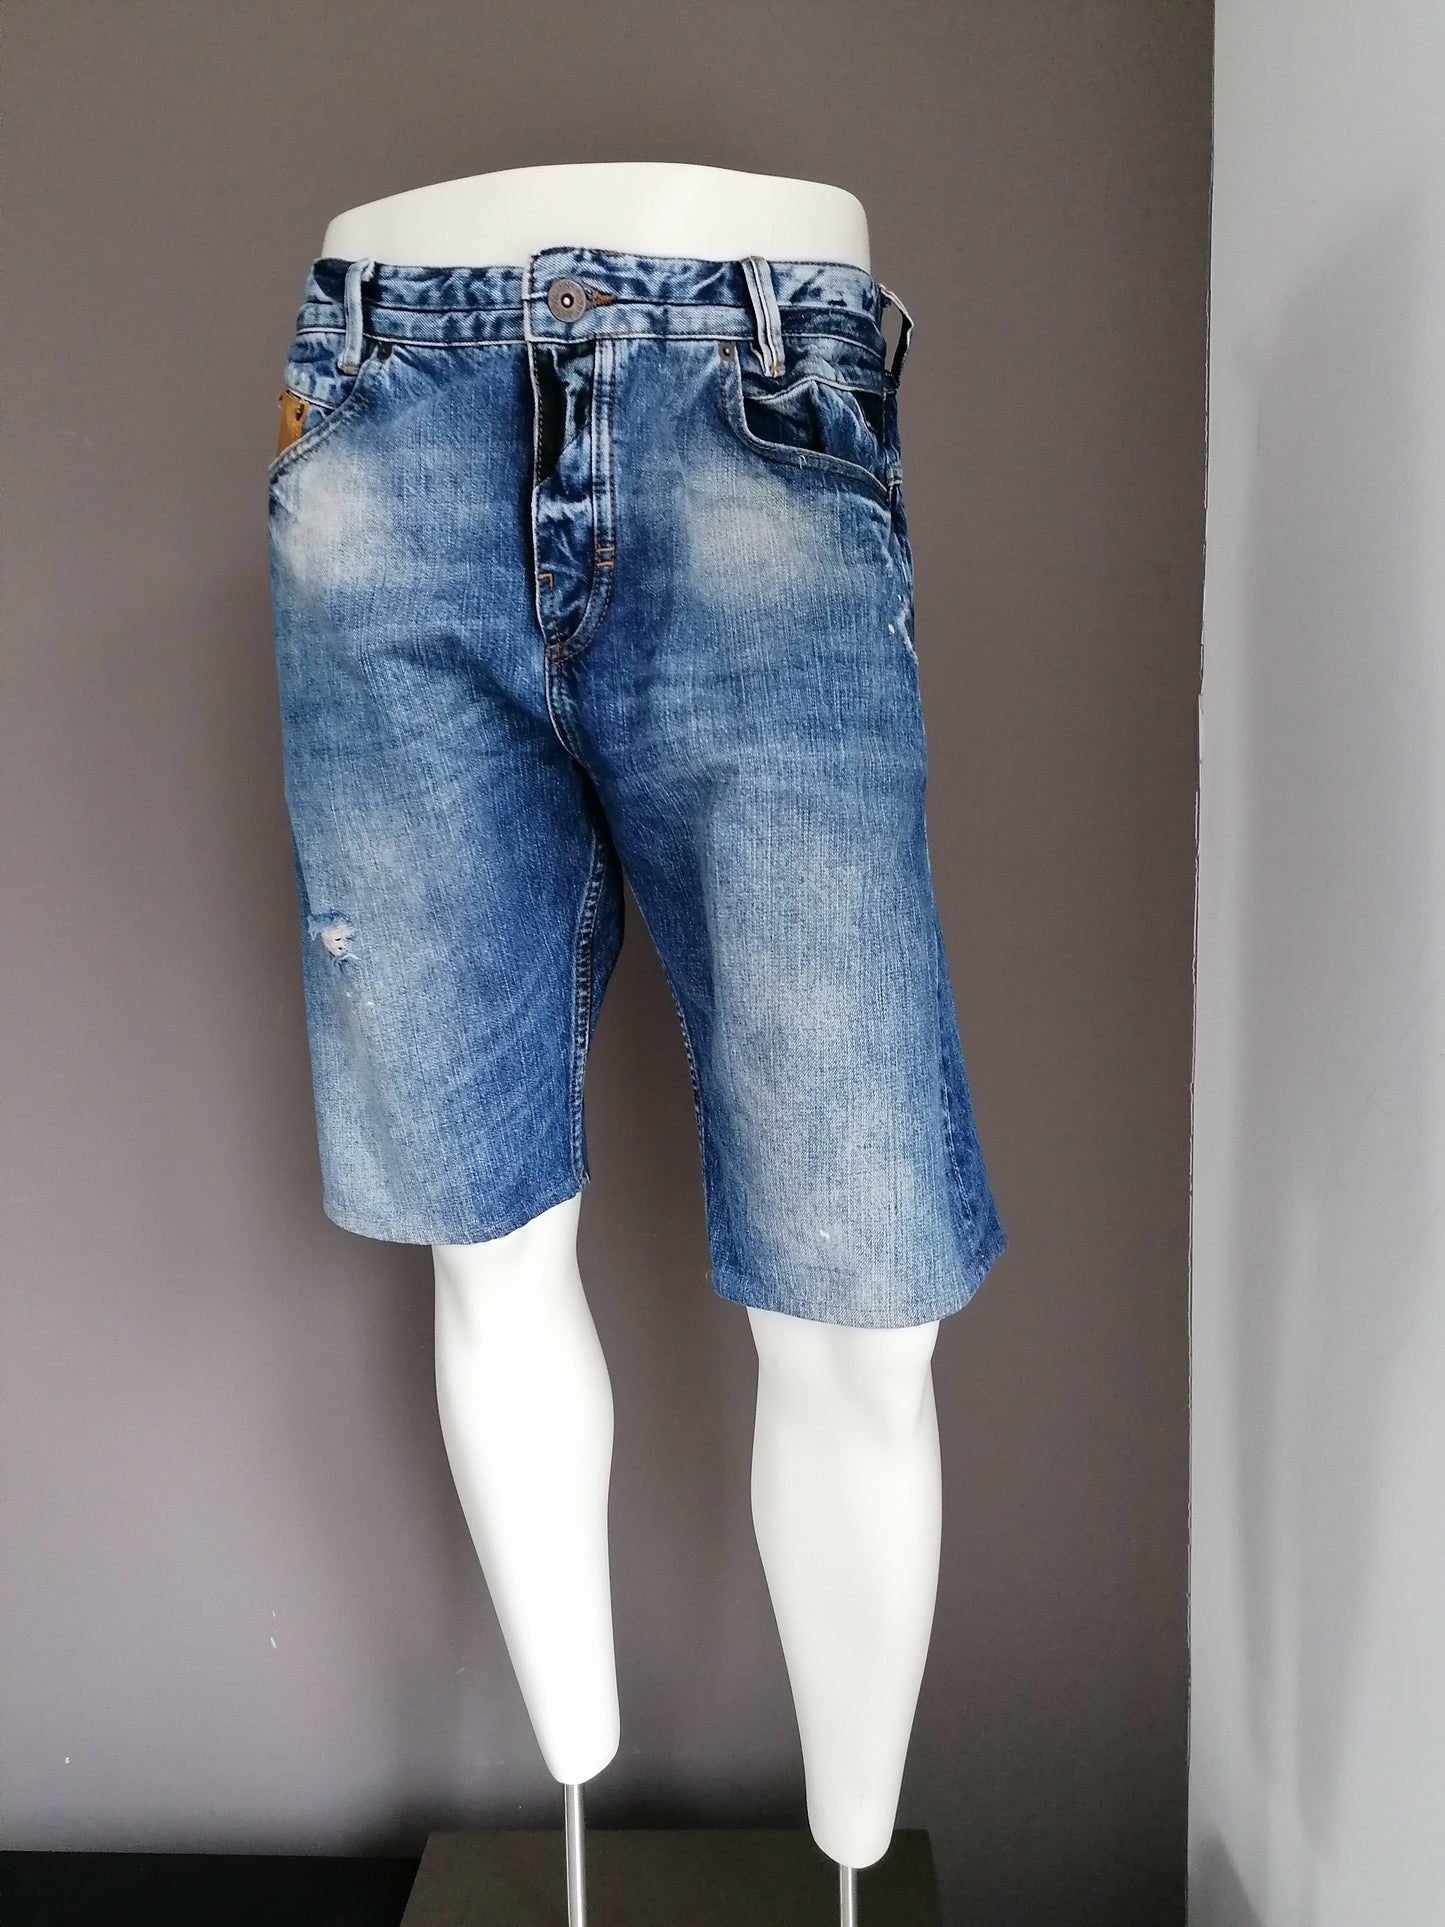 Pantalones cortos de jeans de la isla del río. Azul de color. Tamaño W38